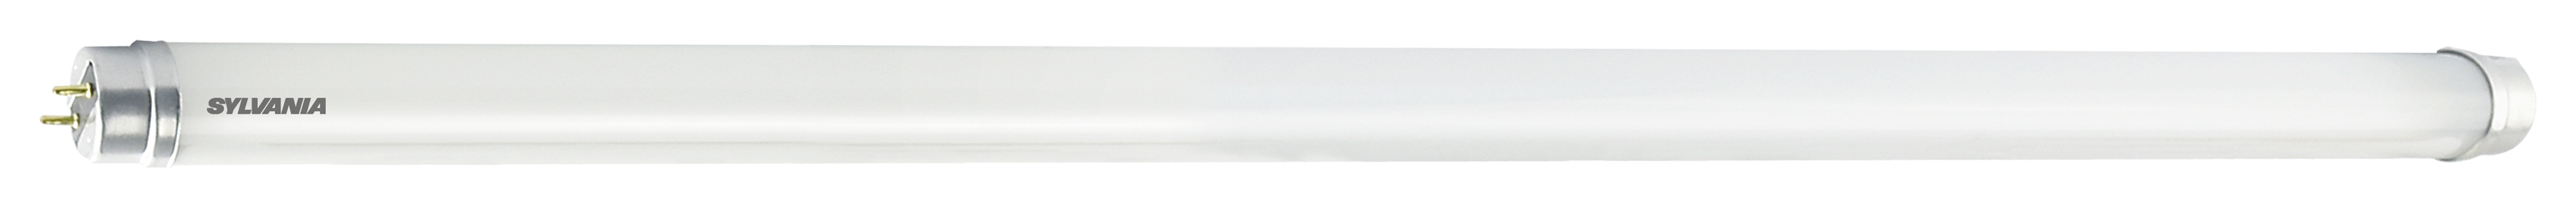 Image of Sylvania 4ft T8 Cool White LED Tube Light